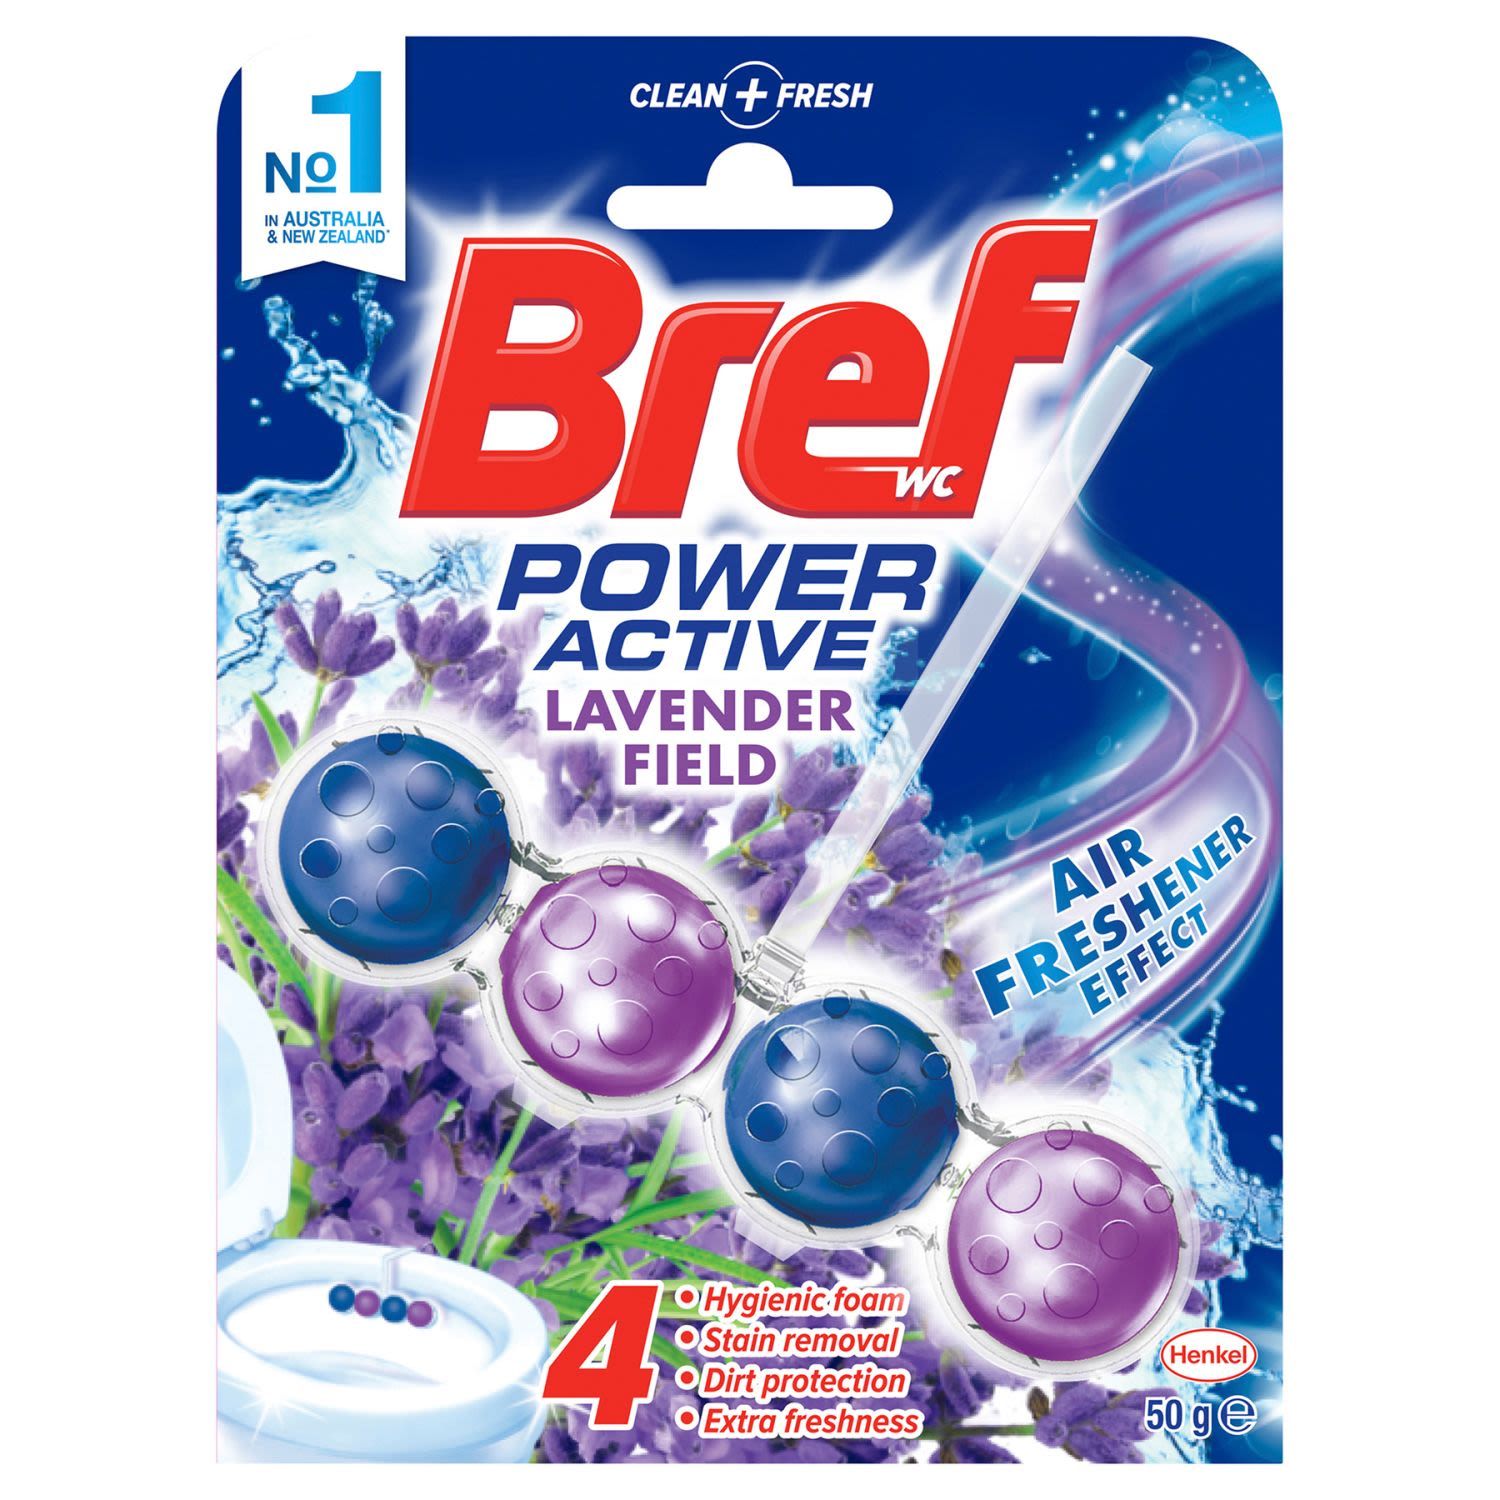 Bref Power Active Toilet Cleaner Block Lavender, 50 Gram